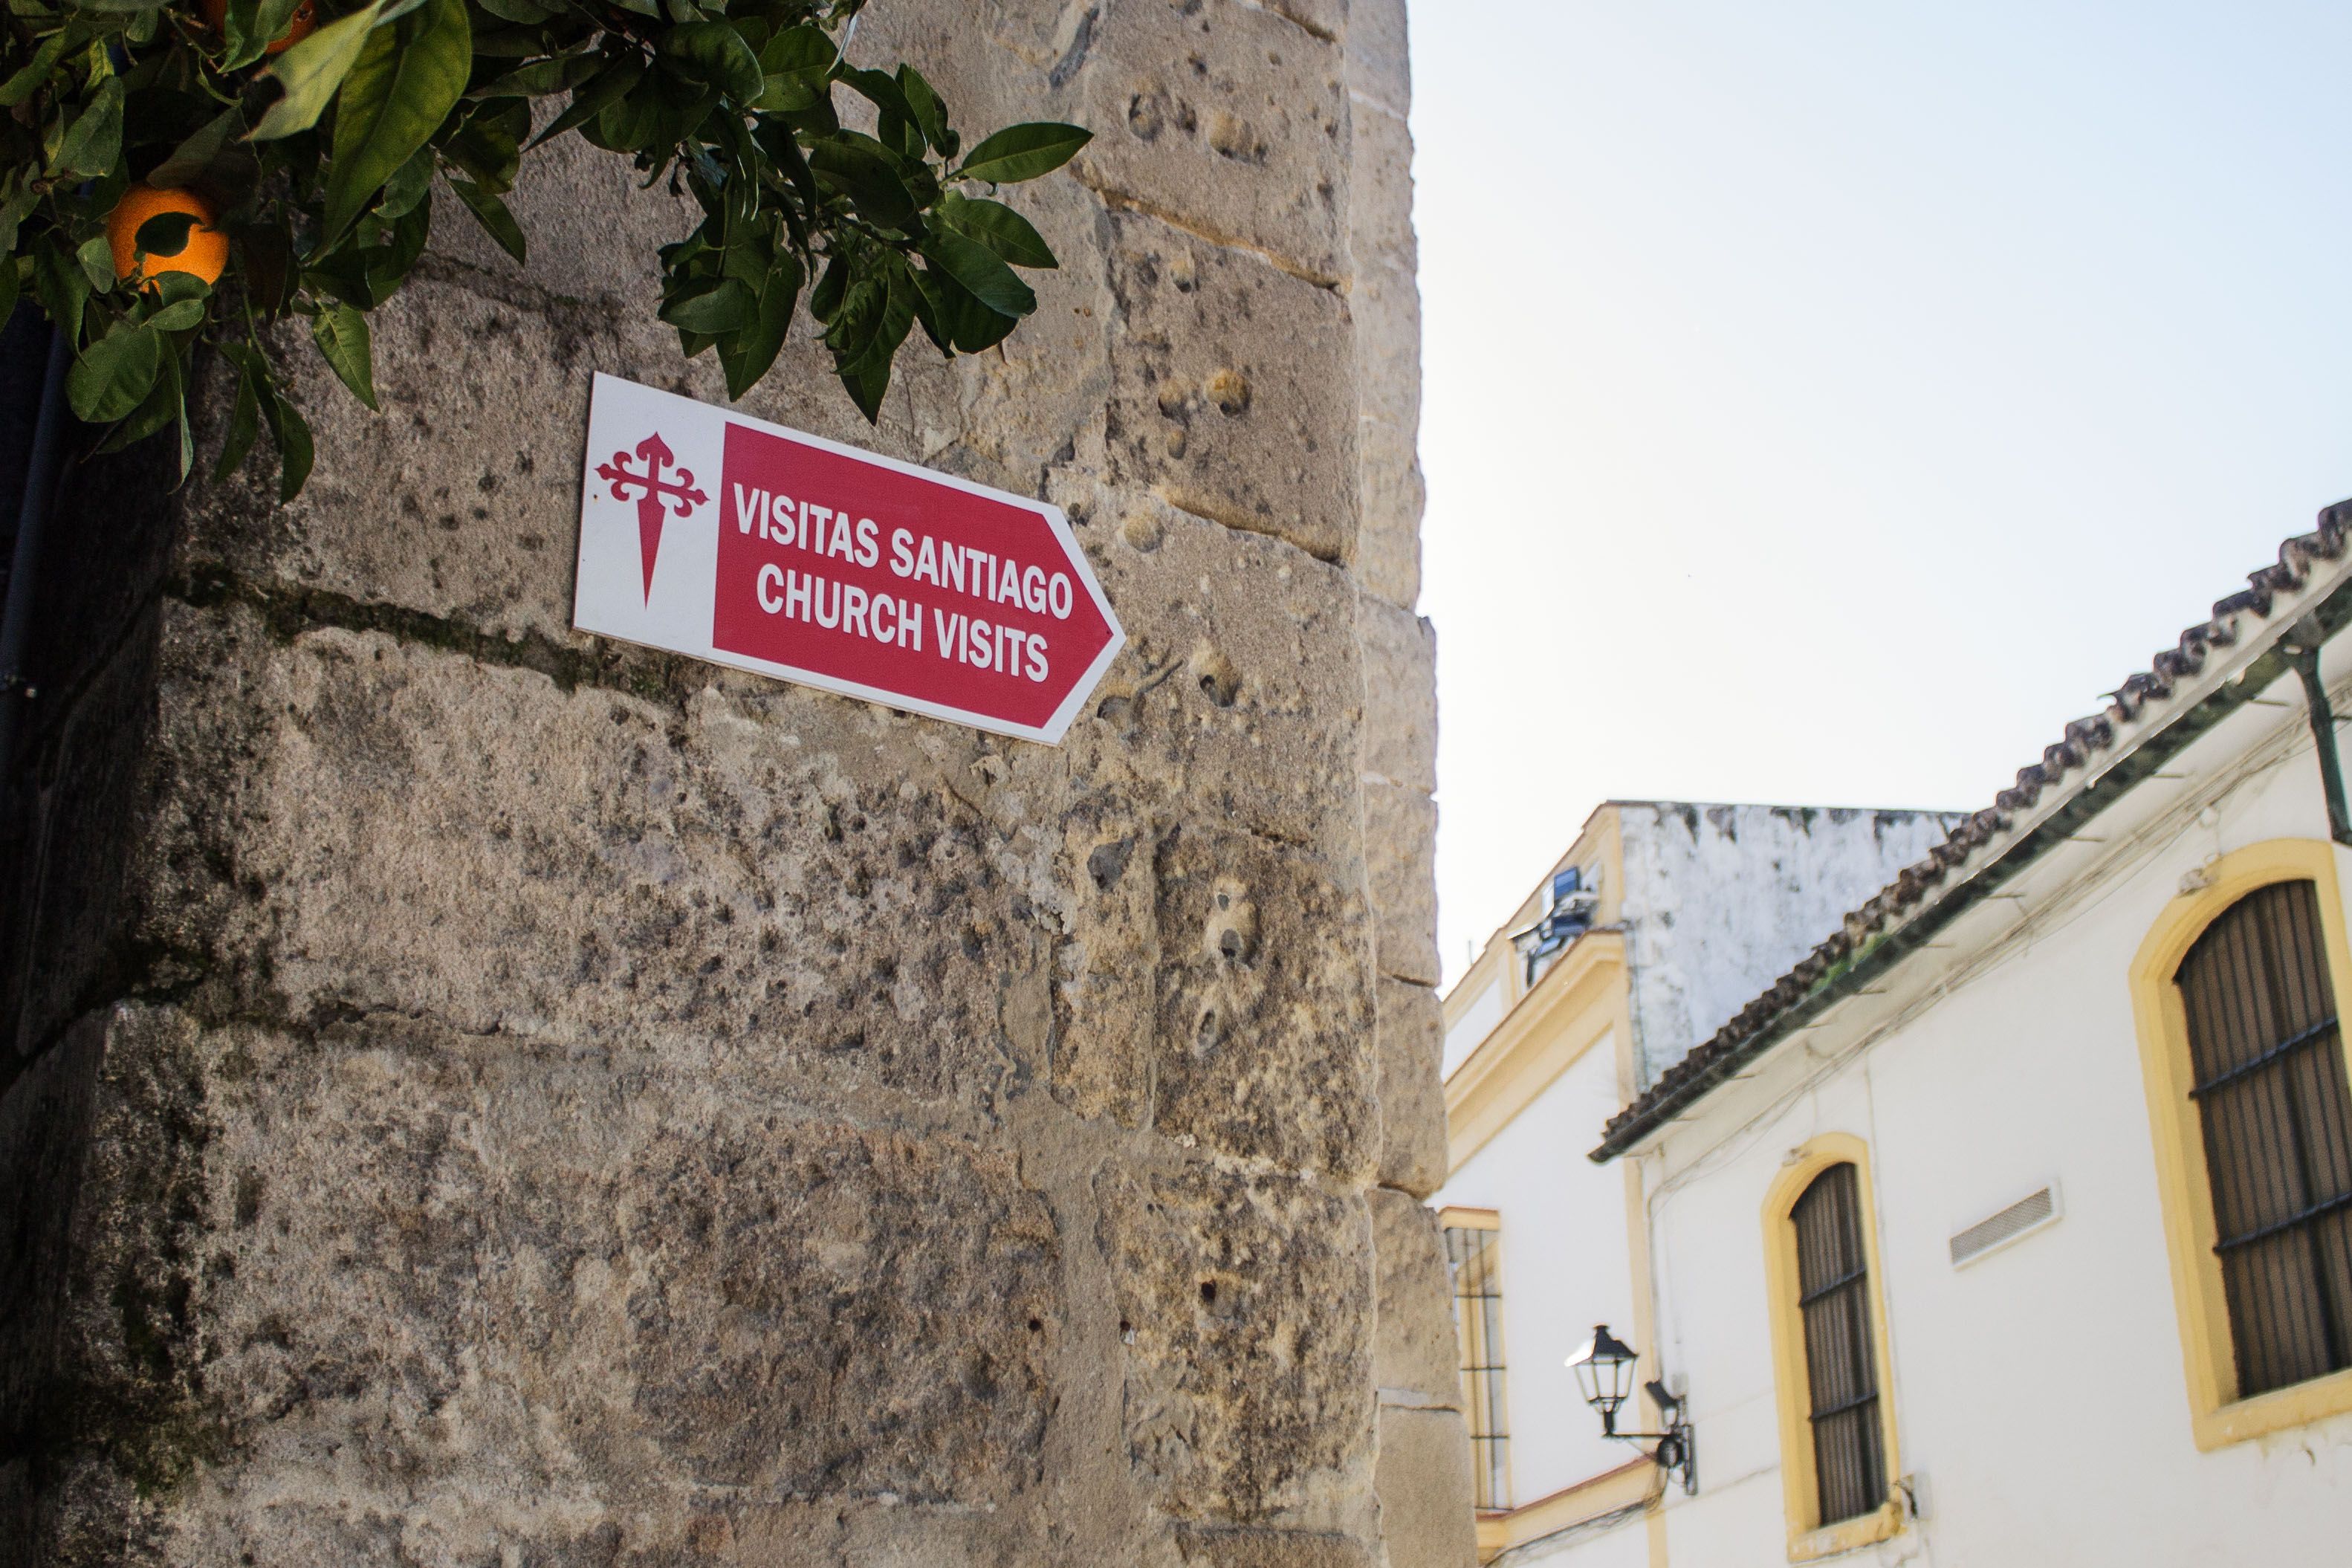 Cartel indicador en la fachada de Santiago indicando el acceso a las vistas.